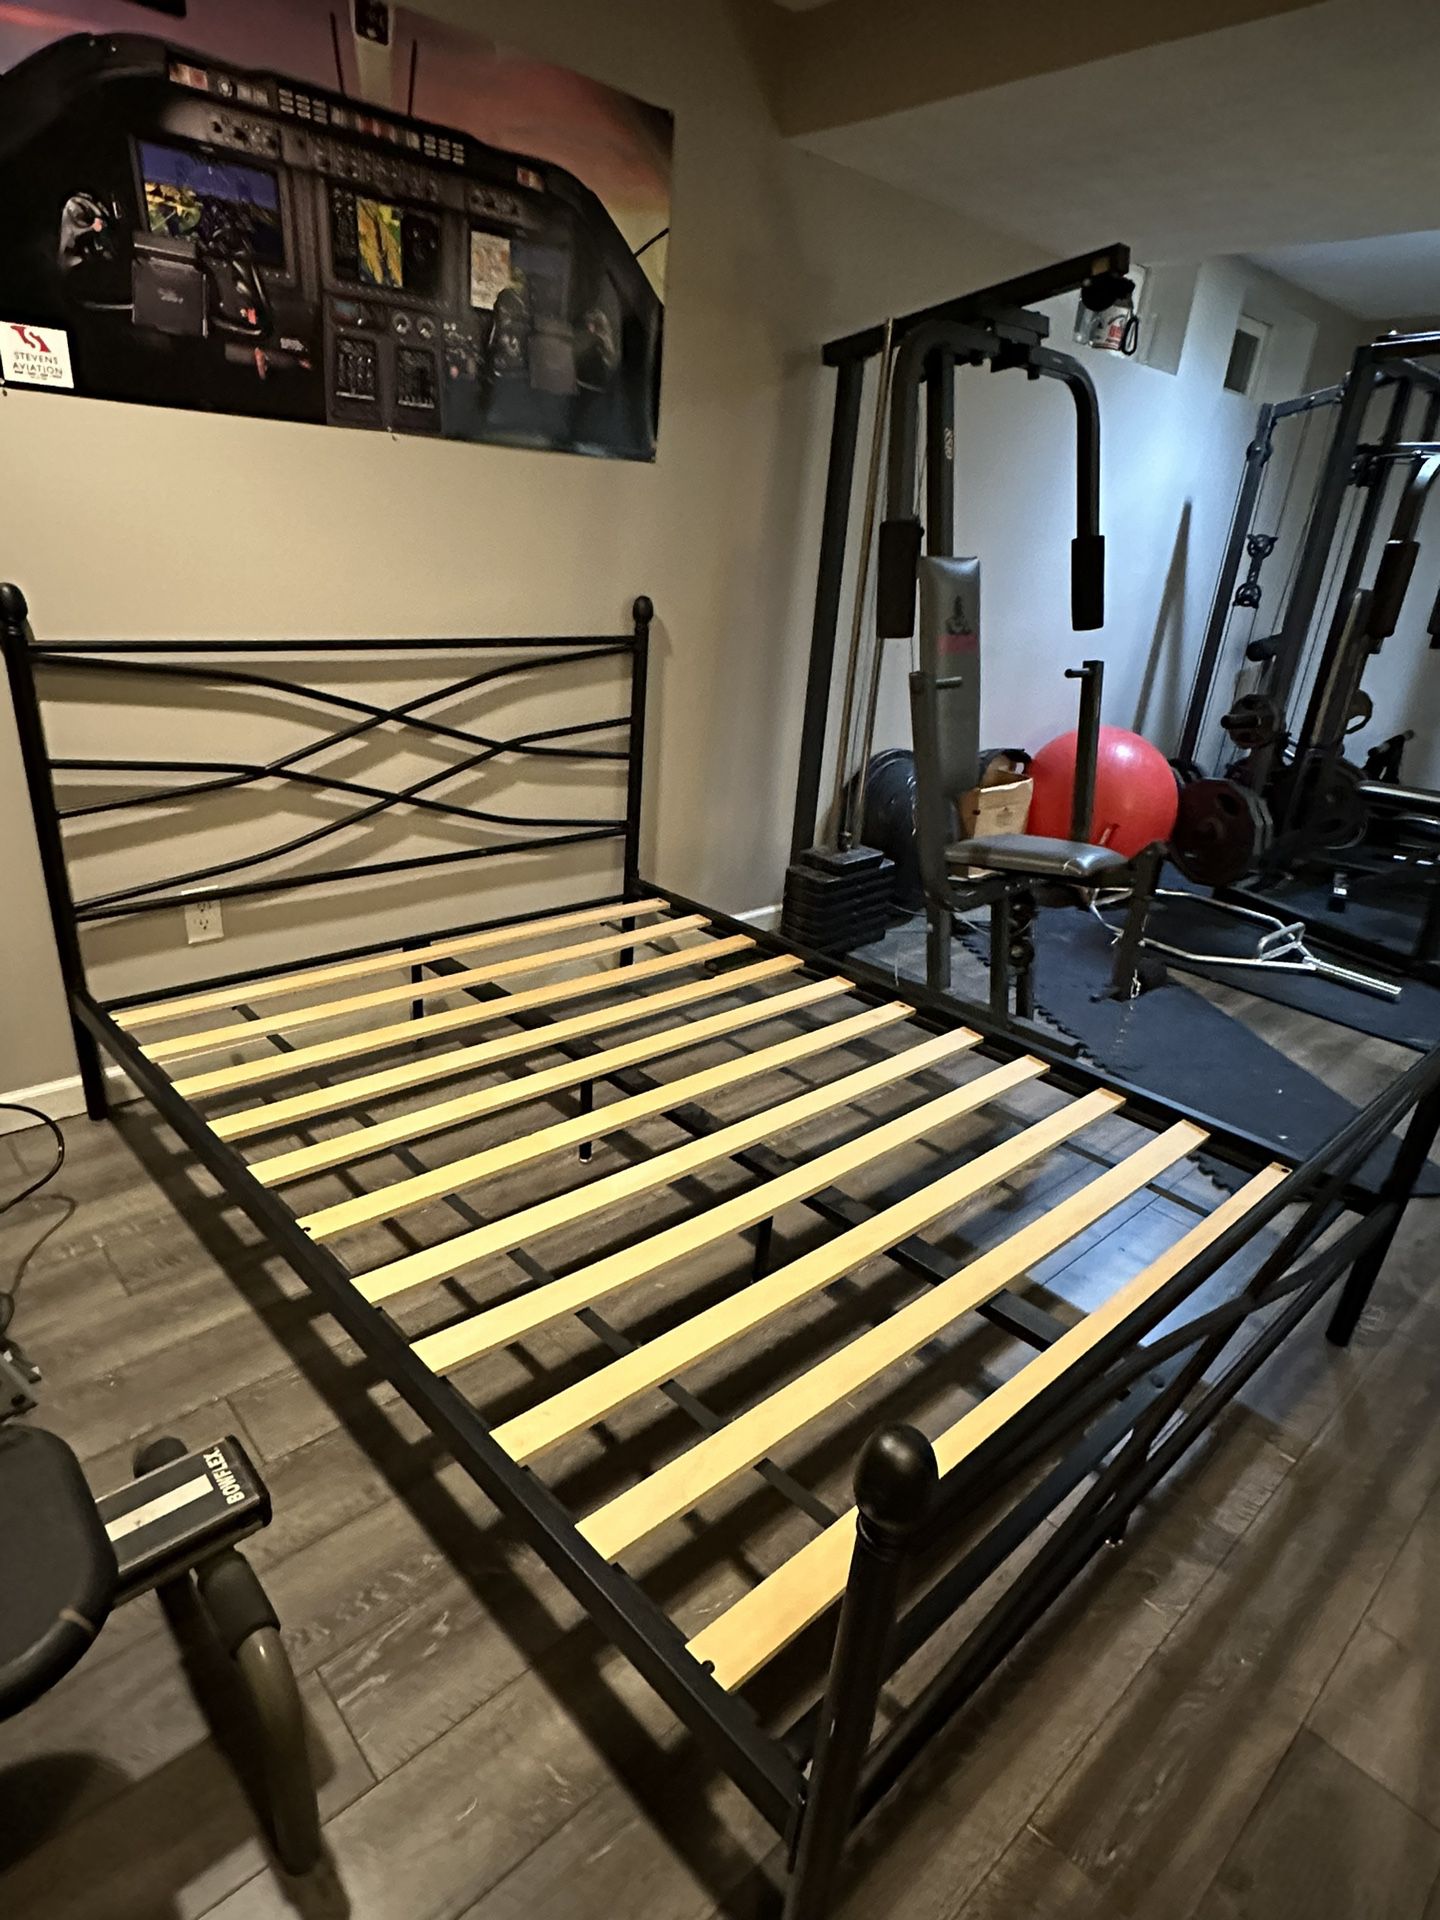 Full Size Platform Bed